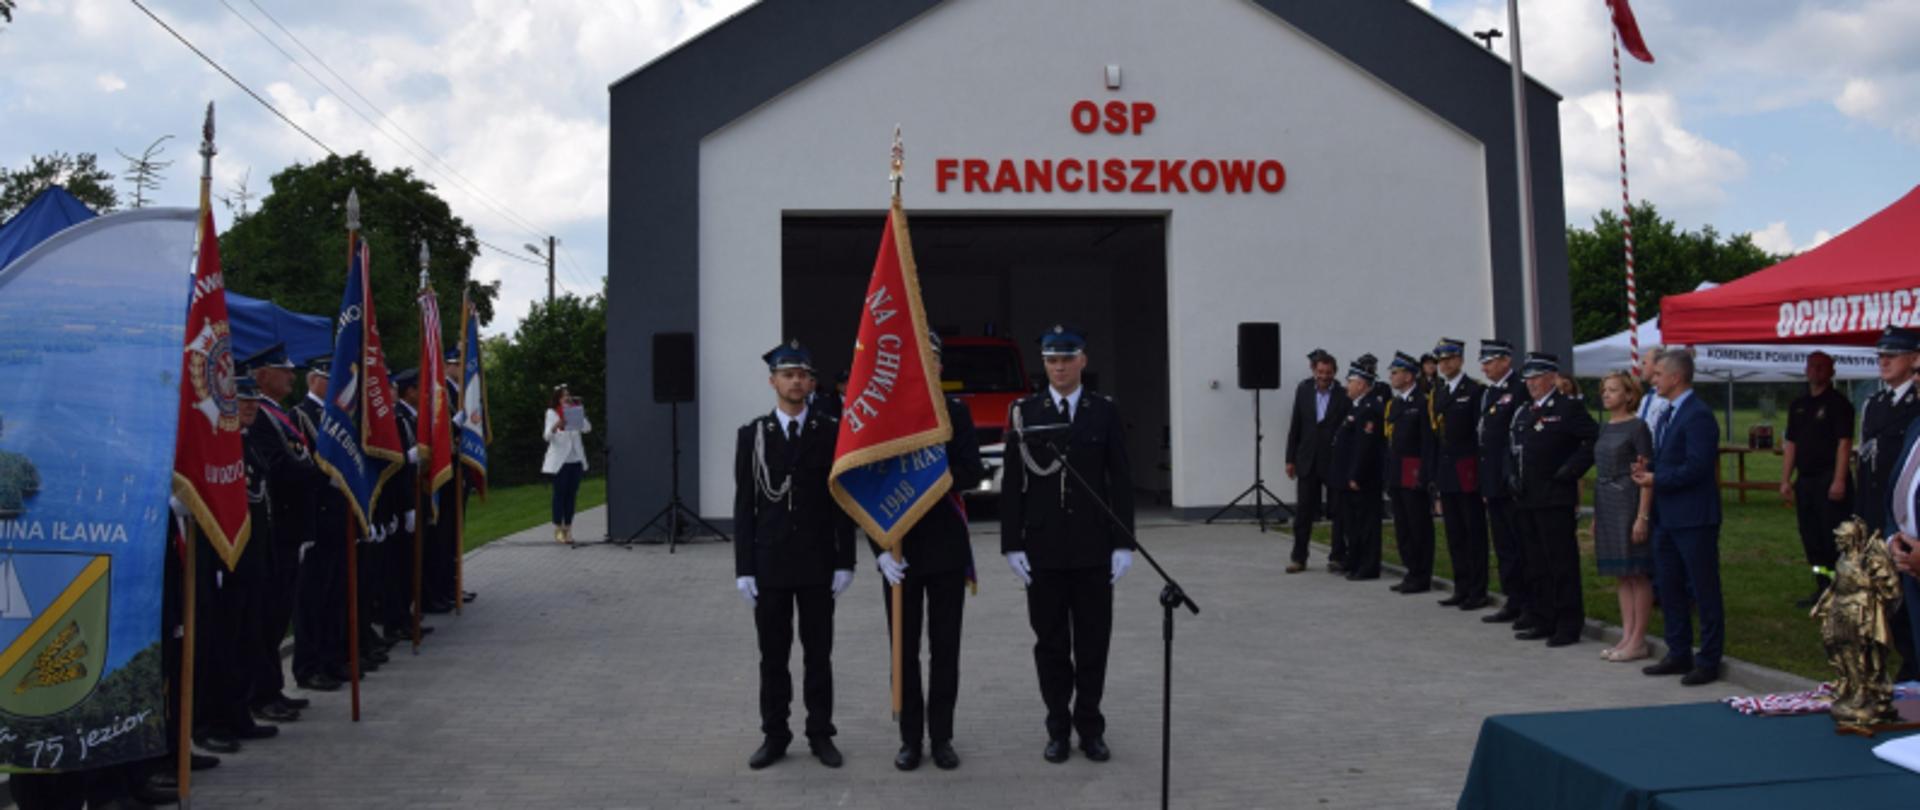 Uroczysty apel z okazji otwarcia strażnicy i nadania sztandaru jednostce OSP Franciszkowo.